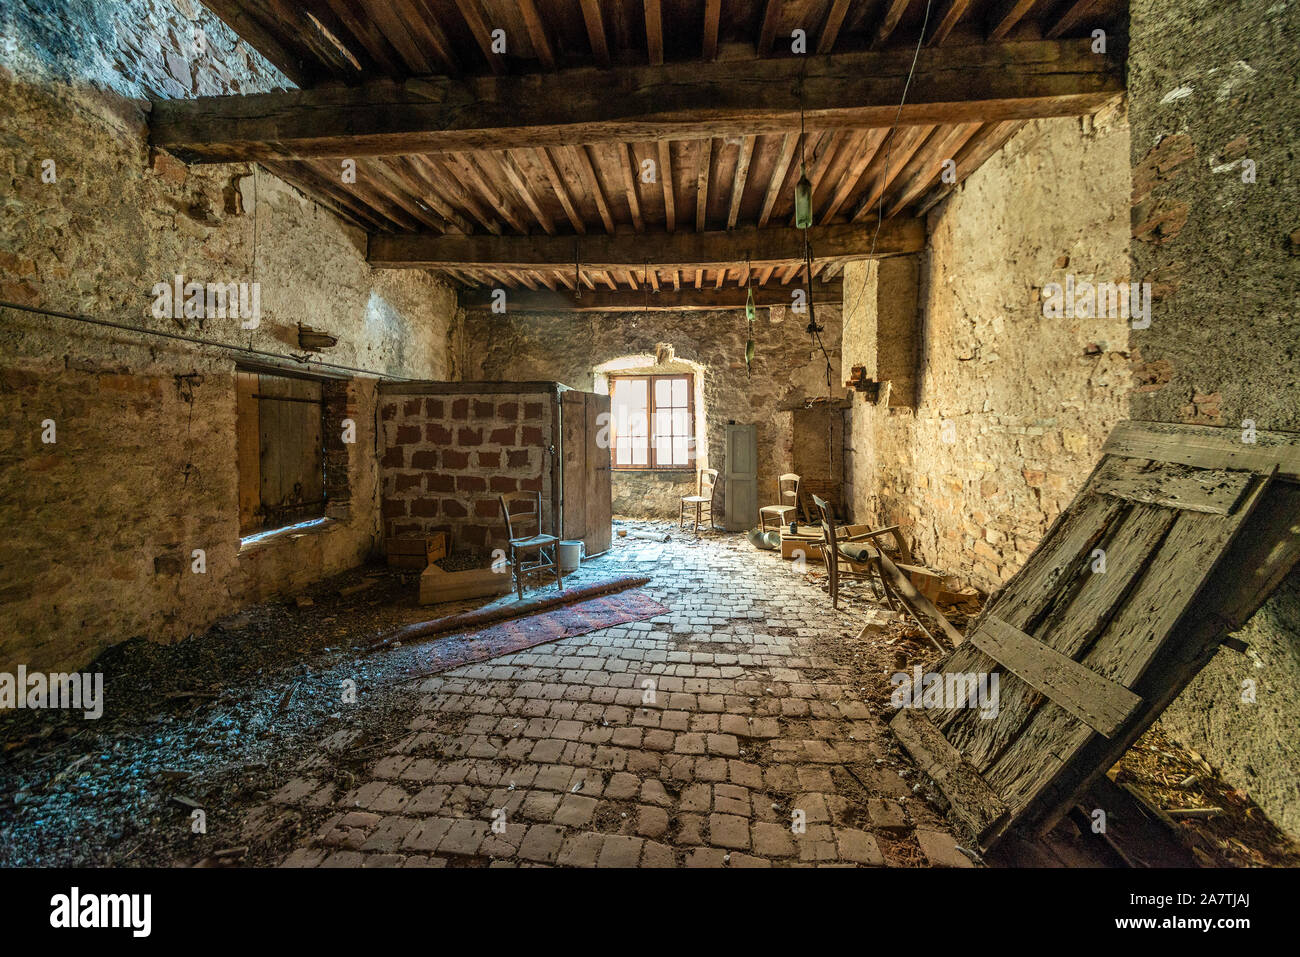 Una sala coperta di polvere abbandonata in una casa medievale francese, con travi in legno intatte e pavimenti in piastrelle, illuminato da luce naturale della finestra. Foto Stock